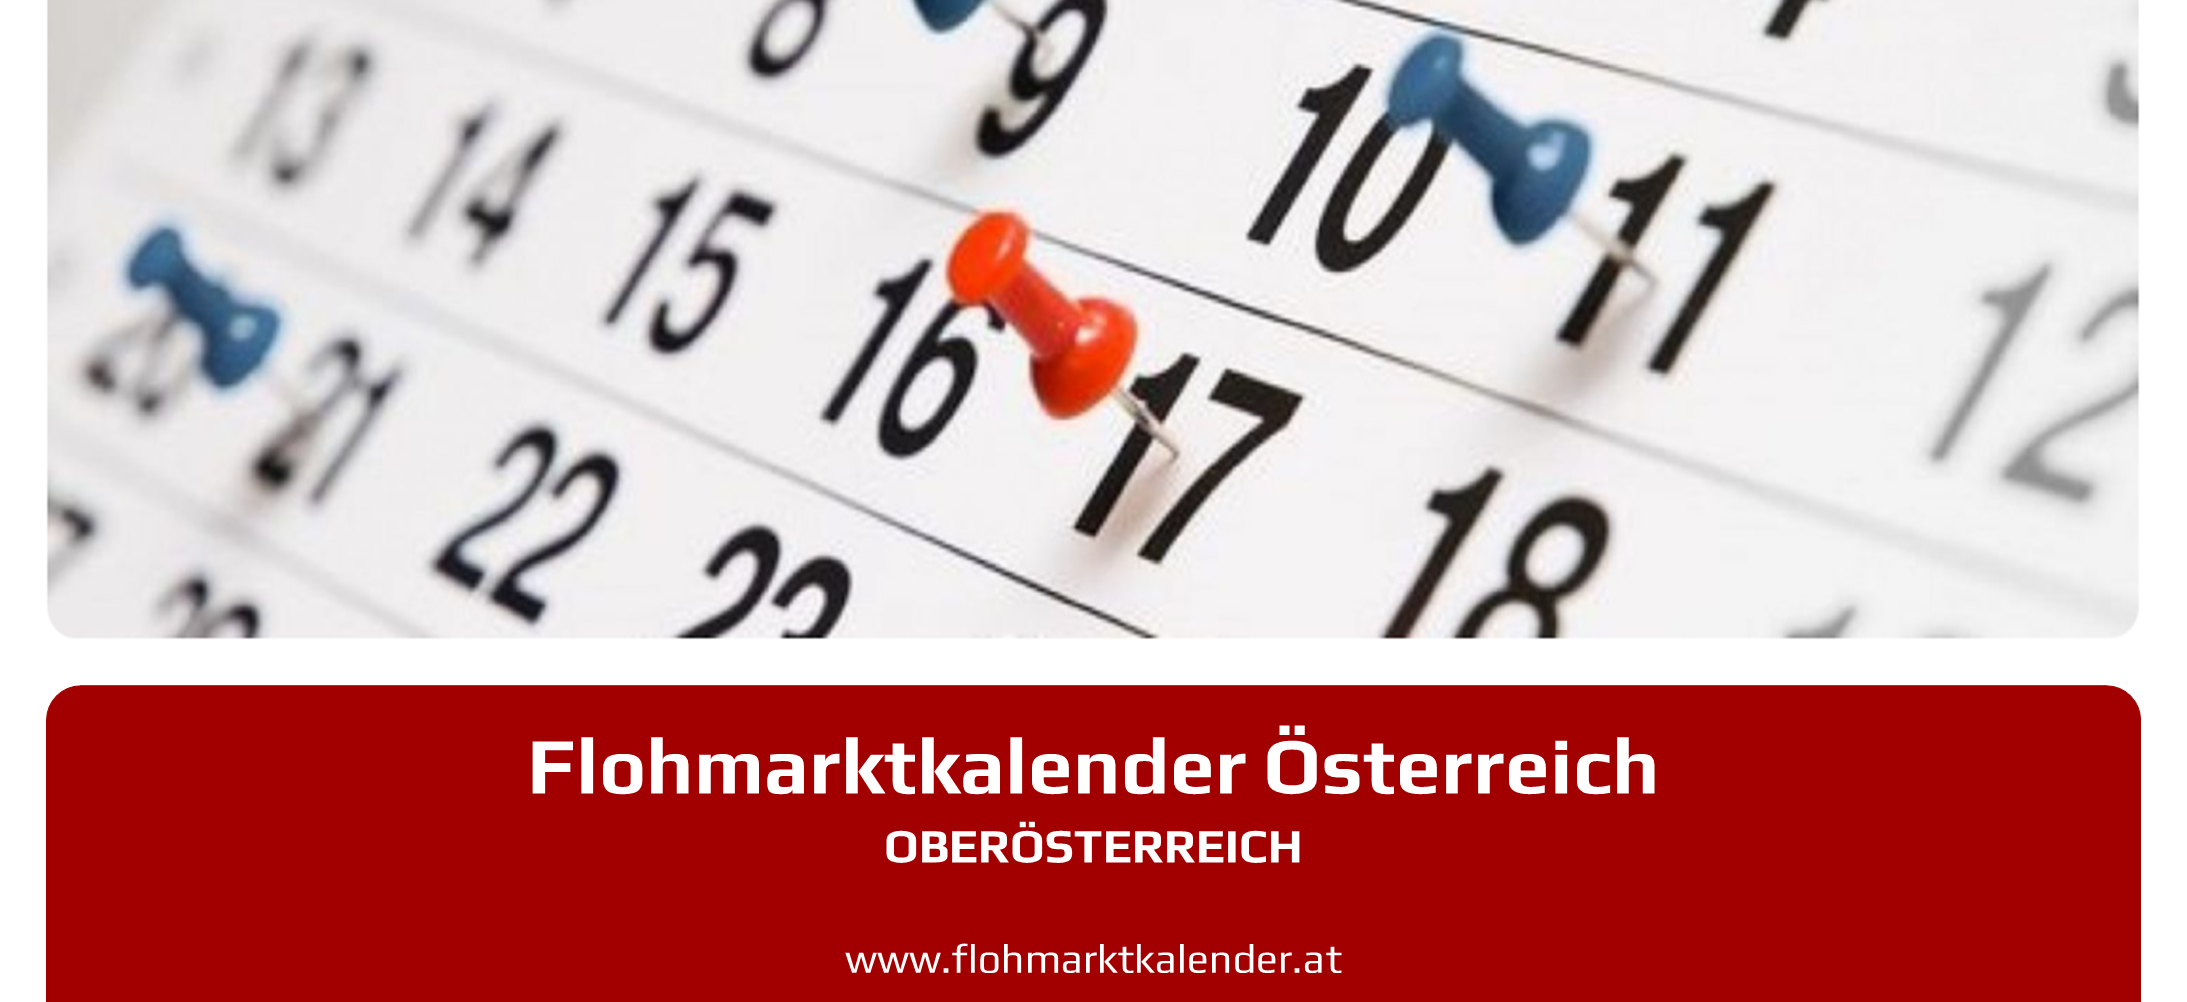 Flohmarktkalender Oberoesterreich 16